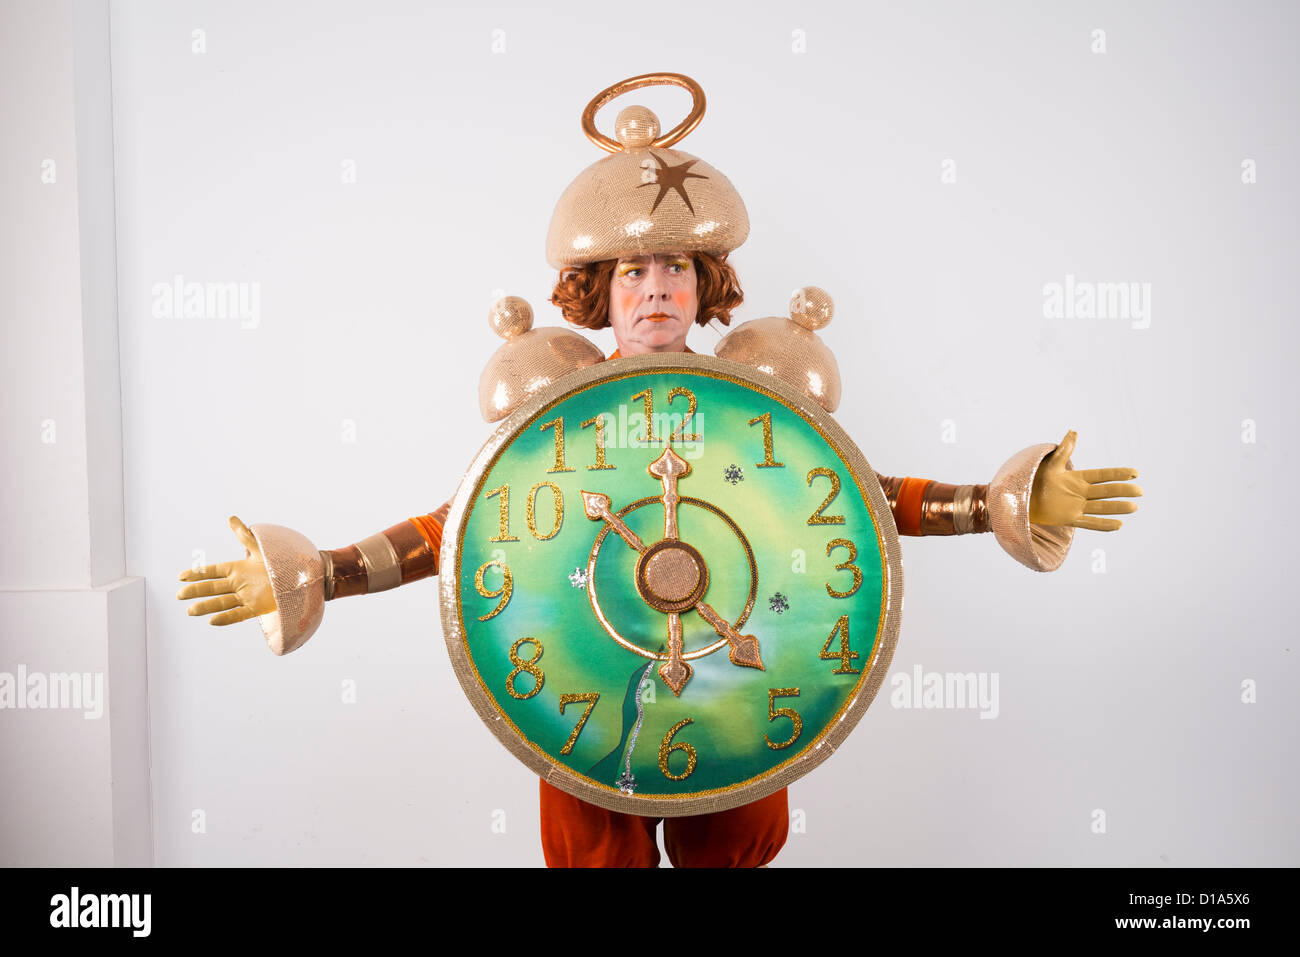 Schauspieler-Kostüm Karneval Theater spielen Person posiert ein Wecker-Mann  Stockfotografie - Alamy